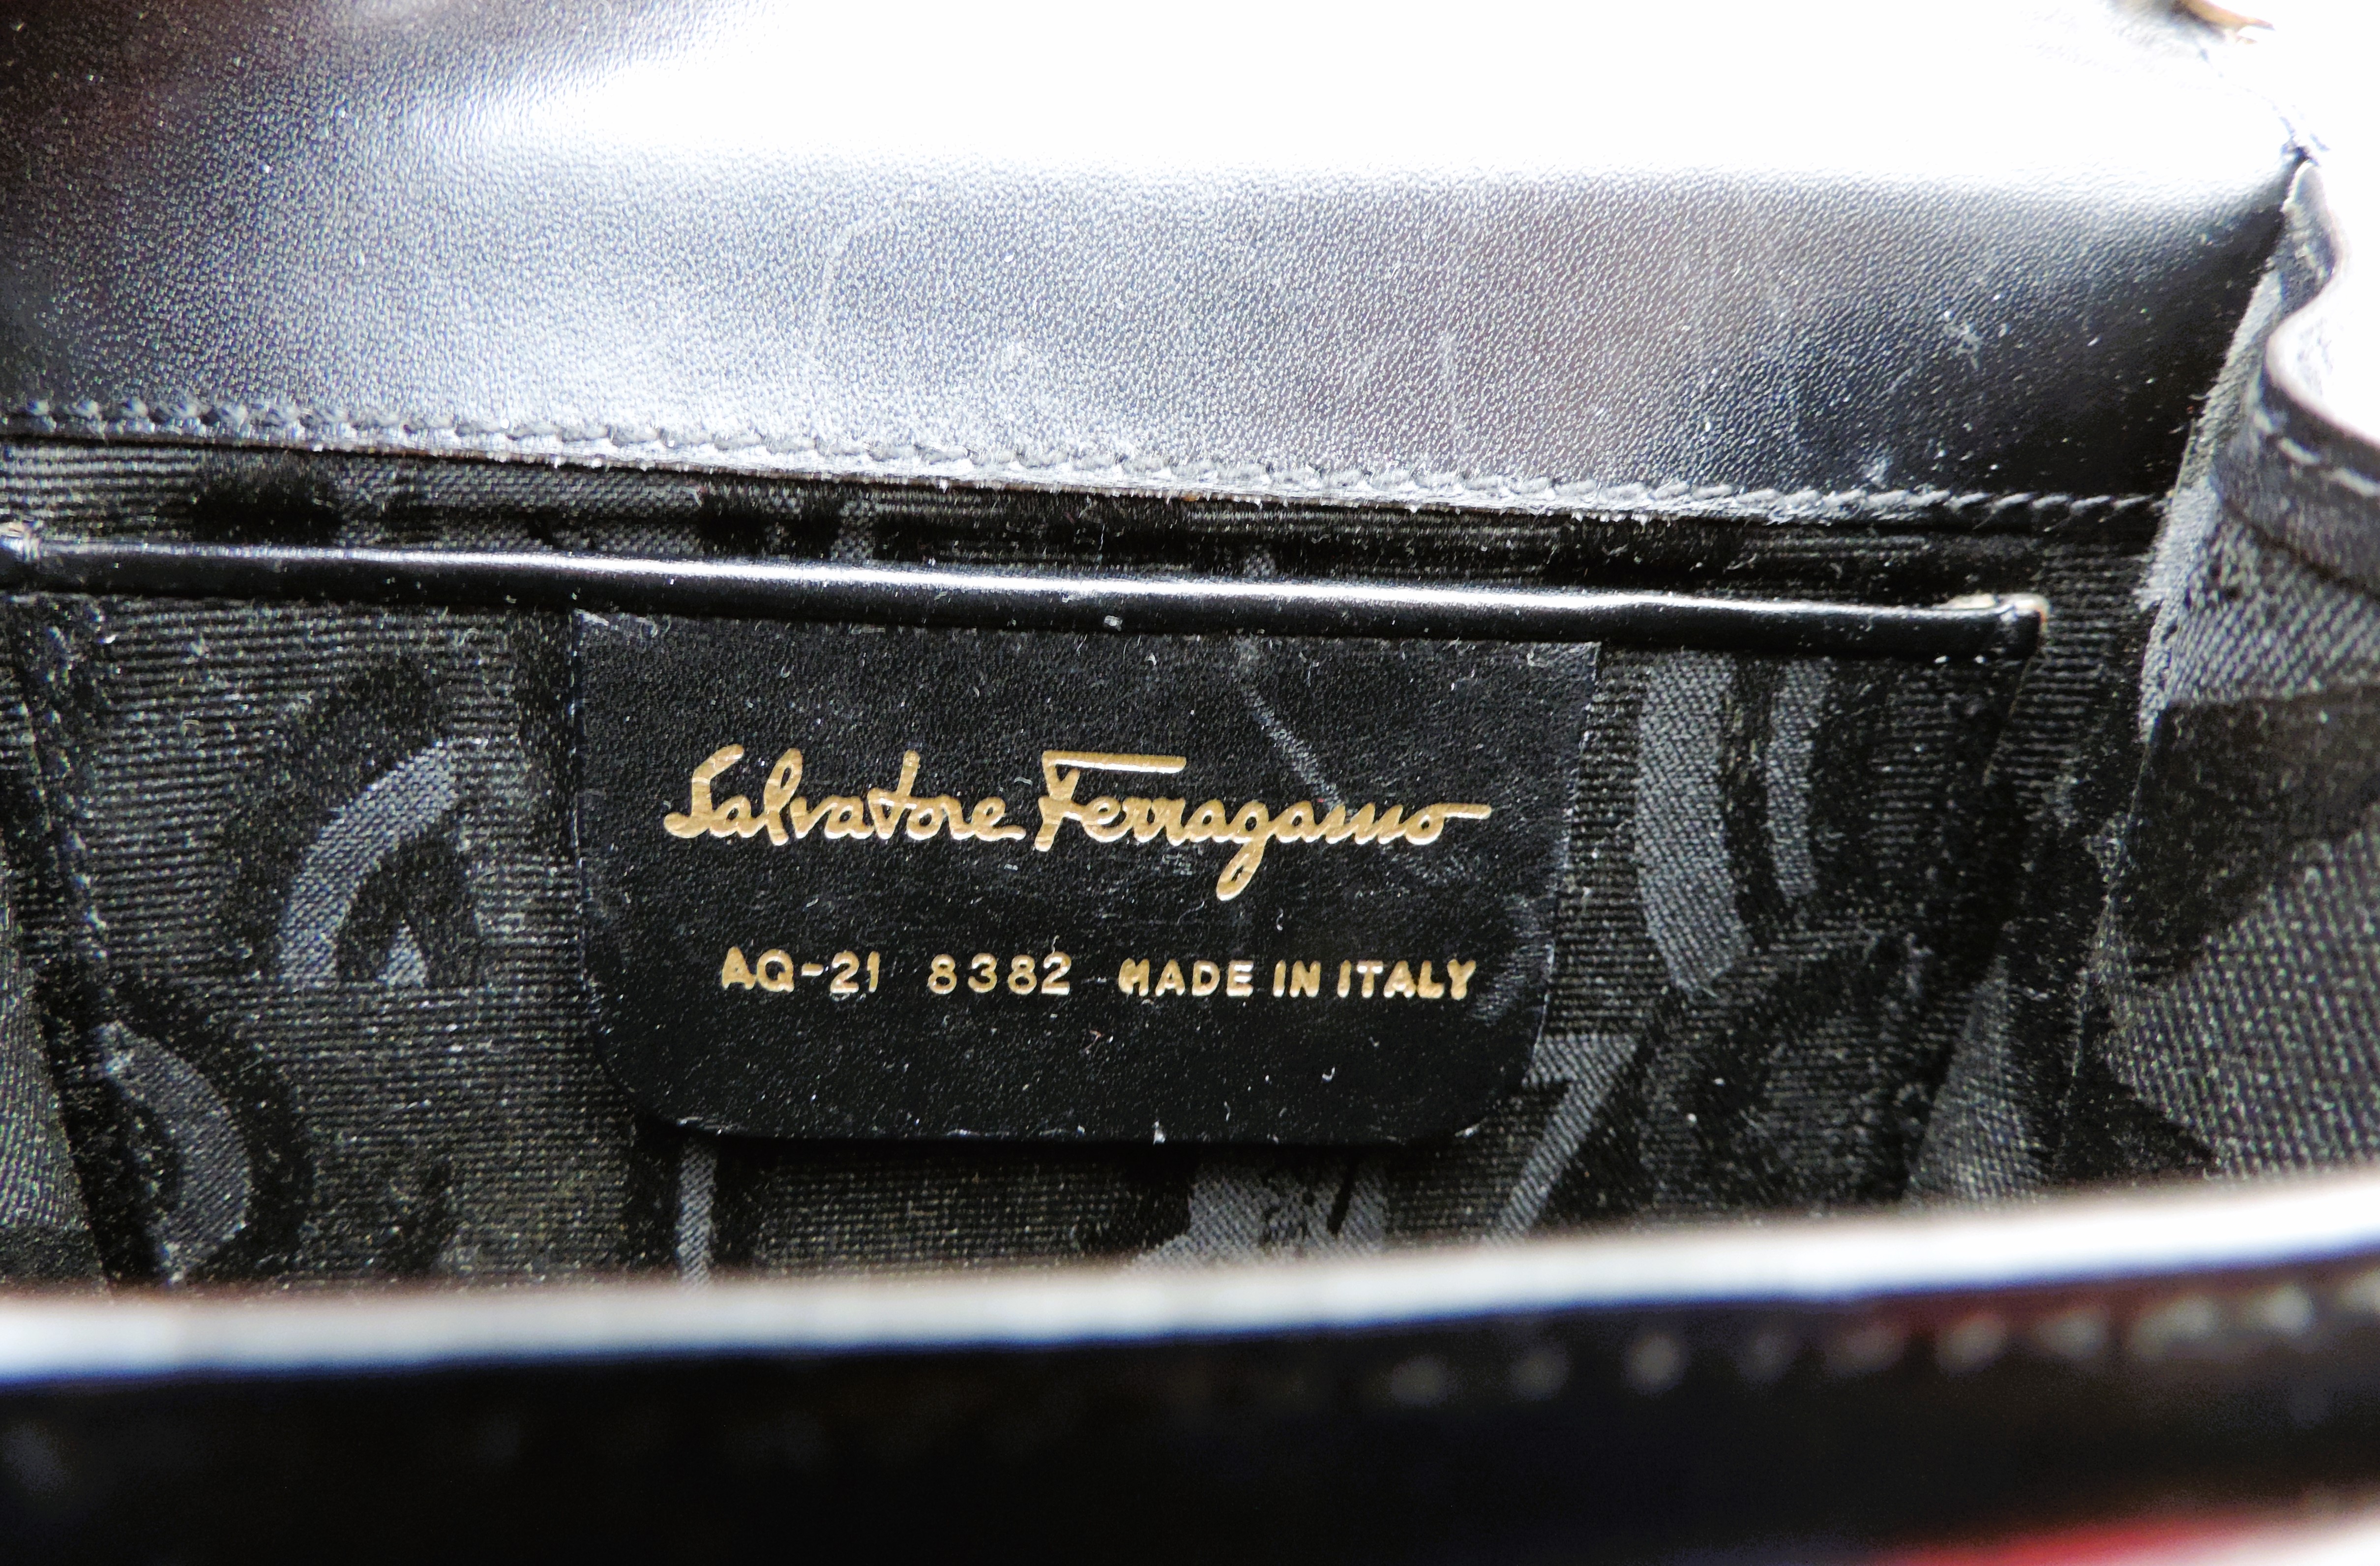 Vintage Salvatore Ferragamo Black Leather Mini Cross Body Bag Gold Chain AQ-21 8382 - Image 11 of 11